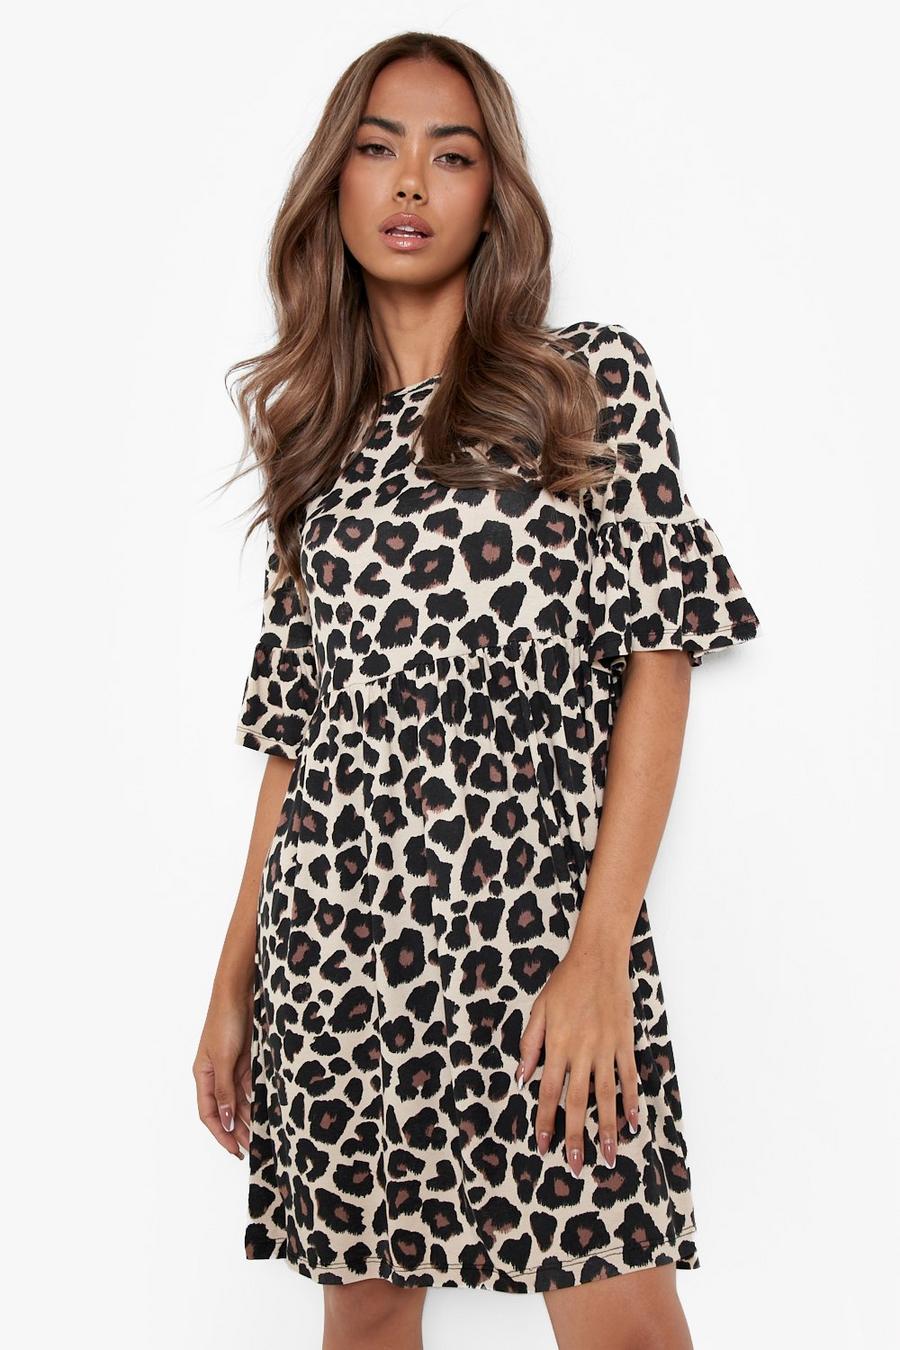 Tan brun Leopard Print Smock Dress